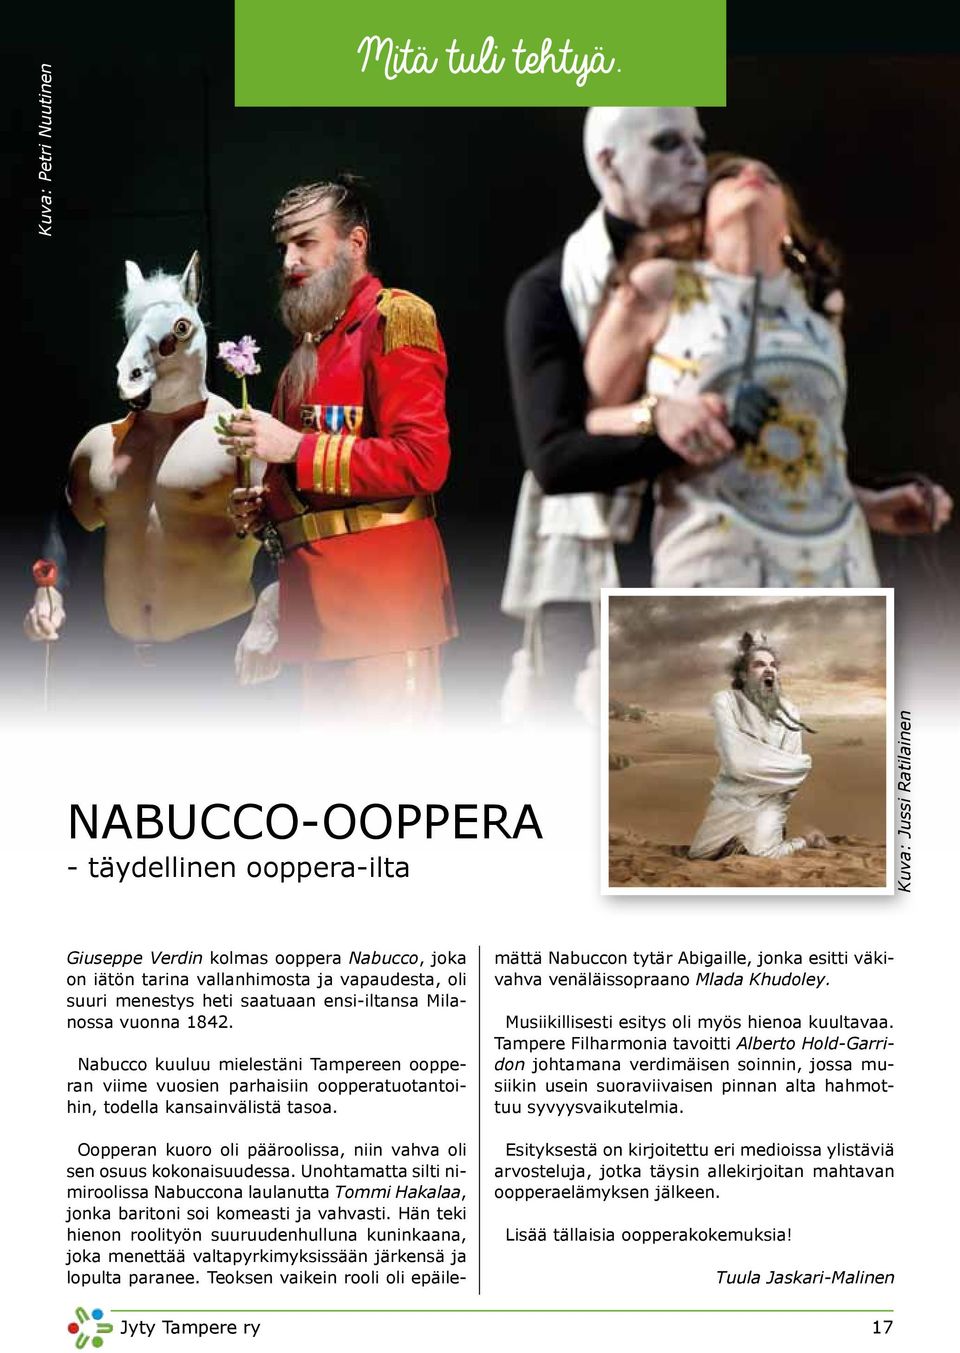 ensi-iltansa Milanossa vuonna 1842. Nabucco kuuluu mielestäni Tampereen oopperan viime vuosien parhaisiin oopperatuotantoihin, todella kansainvälistä tasoa.